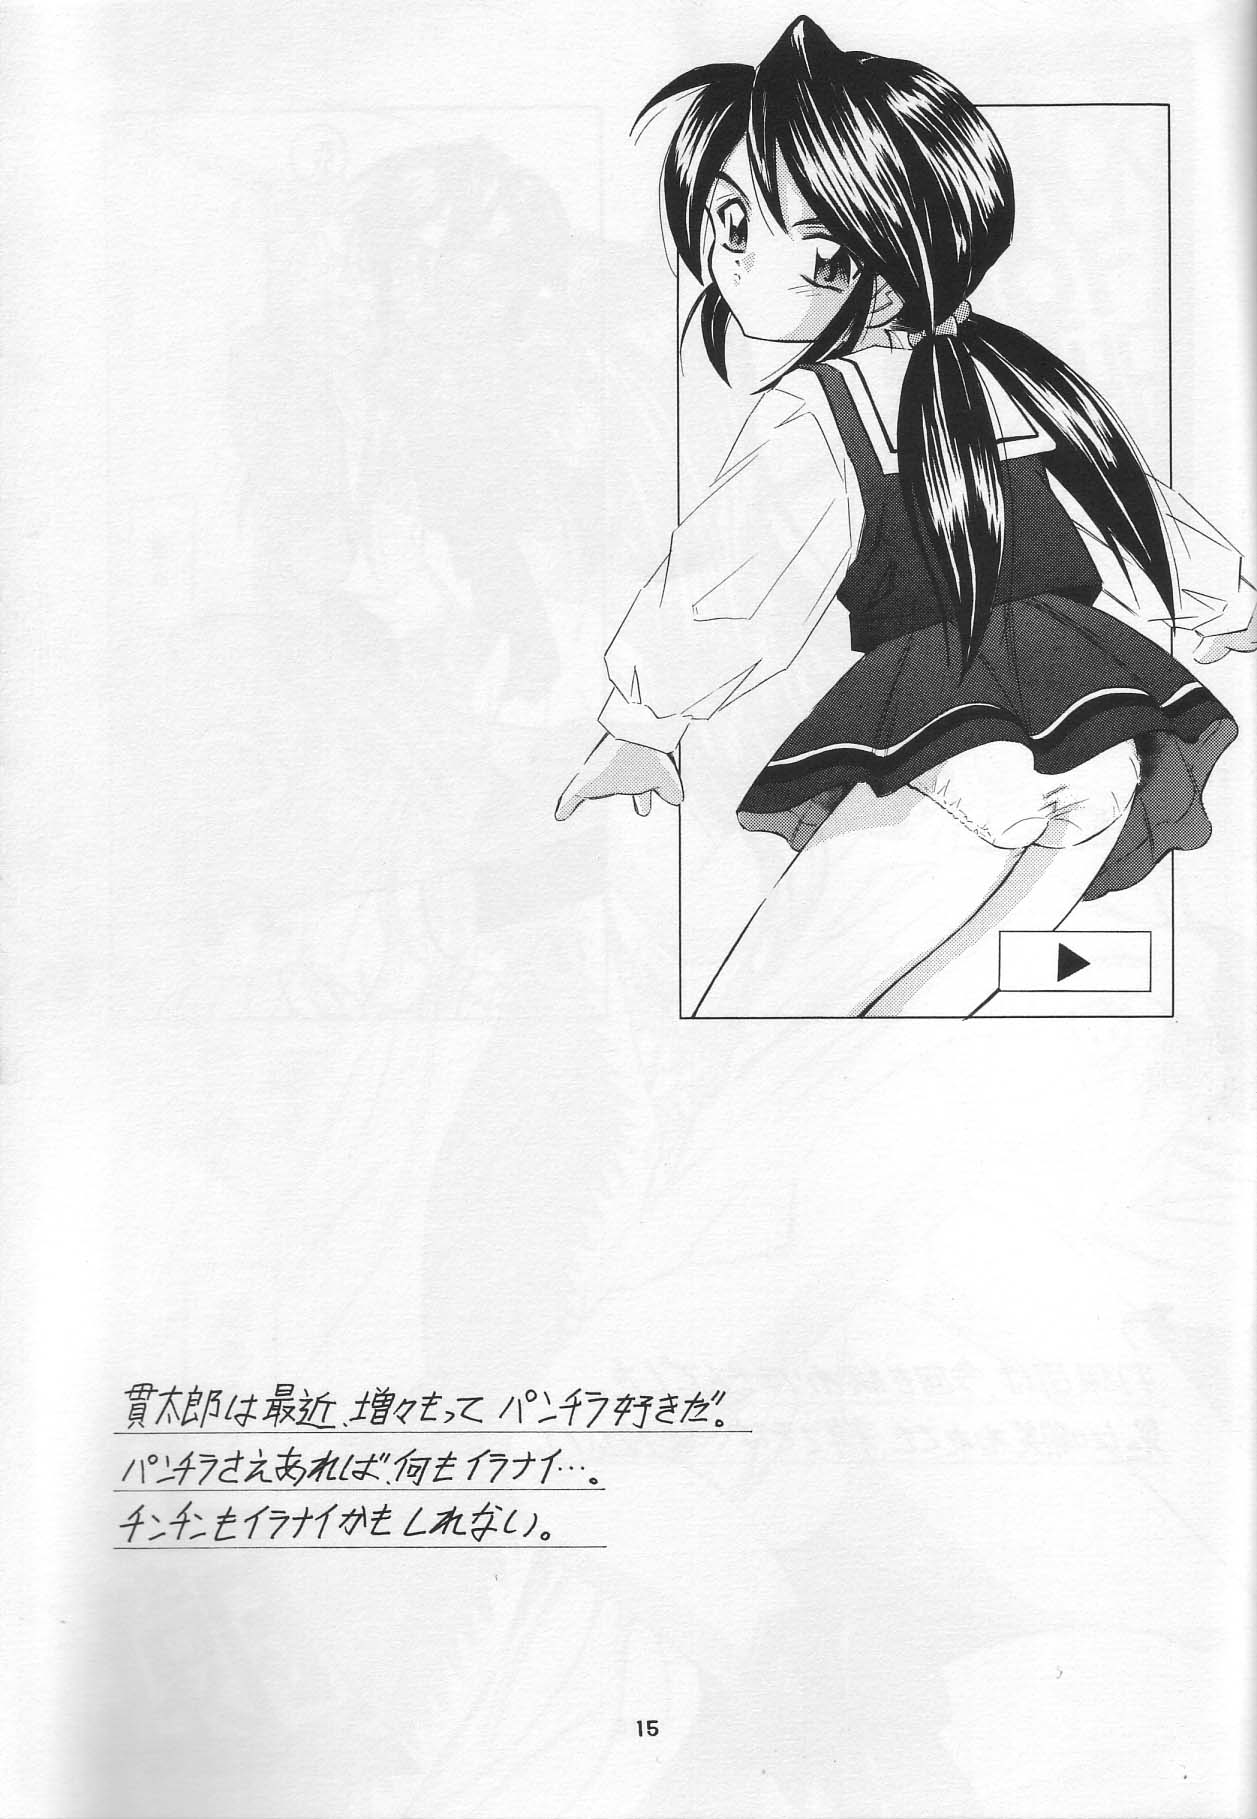 [Takitate] Than Para (Ah! Megami-sama/Ah! My Goddess) page 14 full